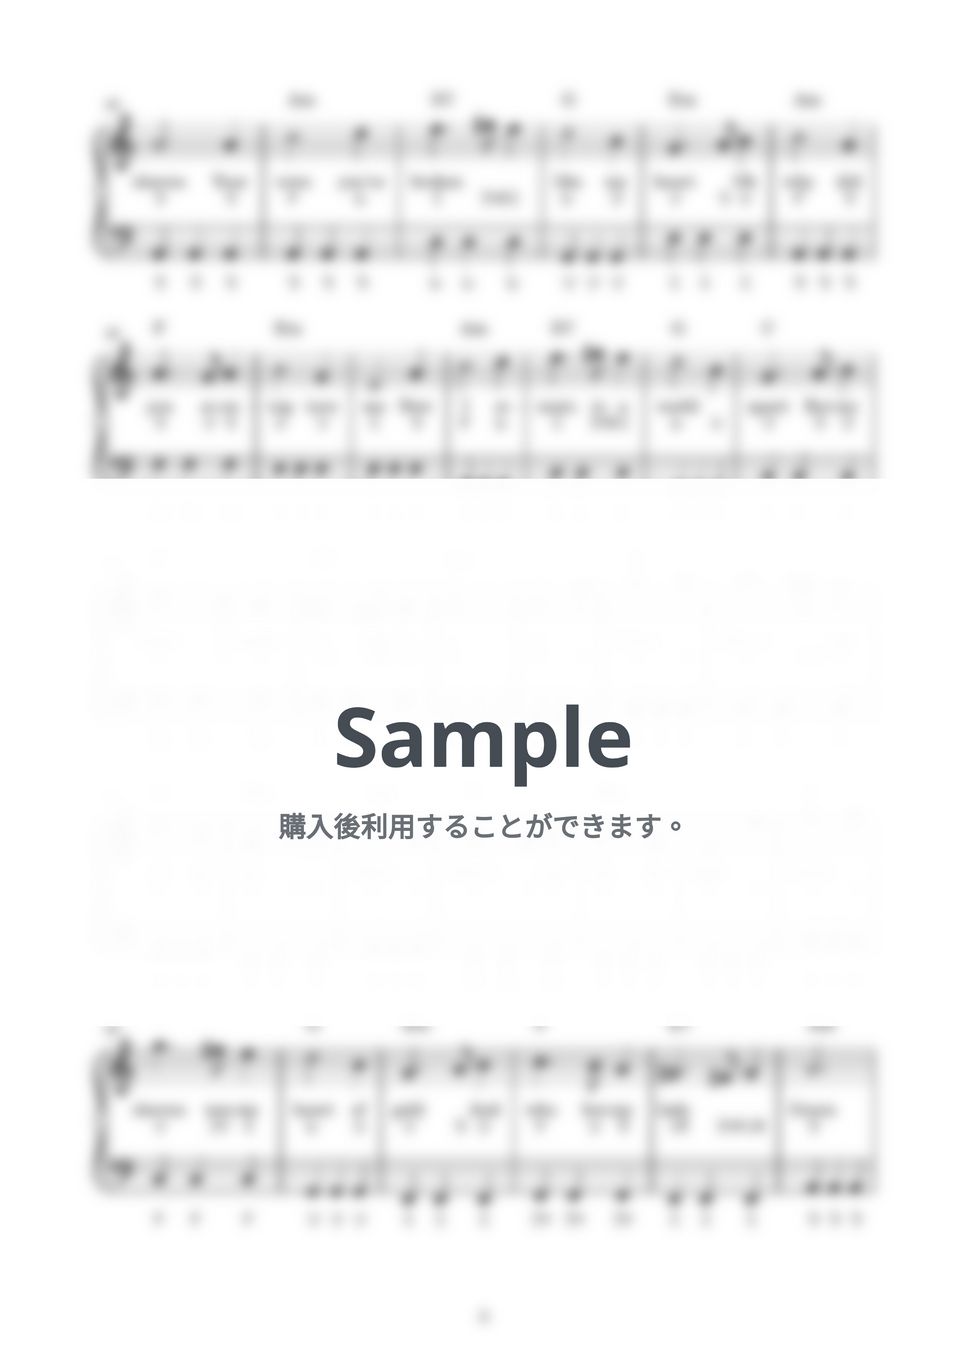 グリーンスリーブス (かんたん / 歌詞付き / ドレミ付き / 初心者) by piano.tokyo